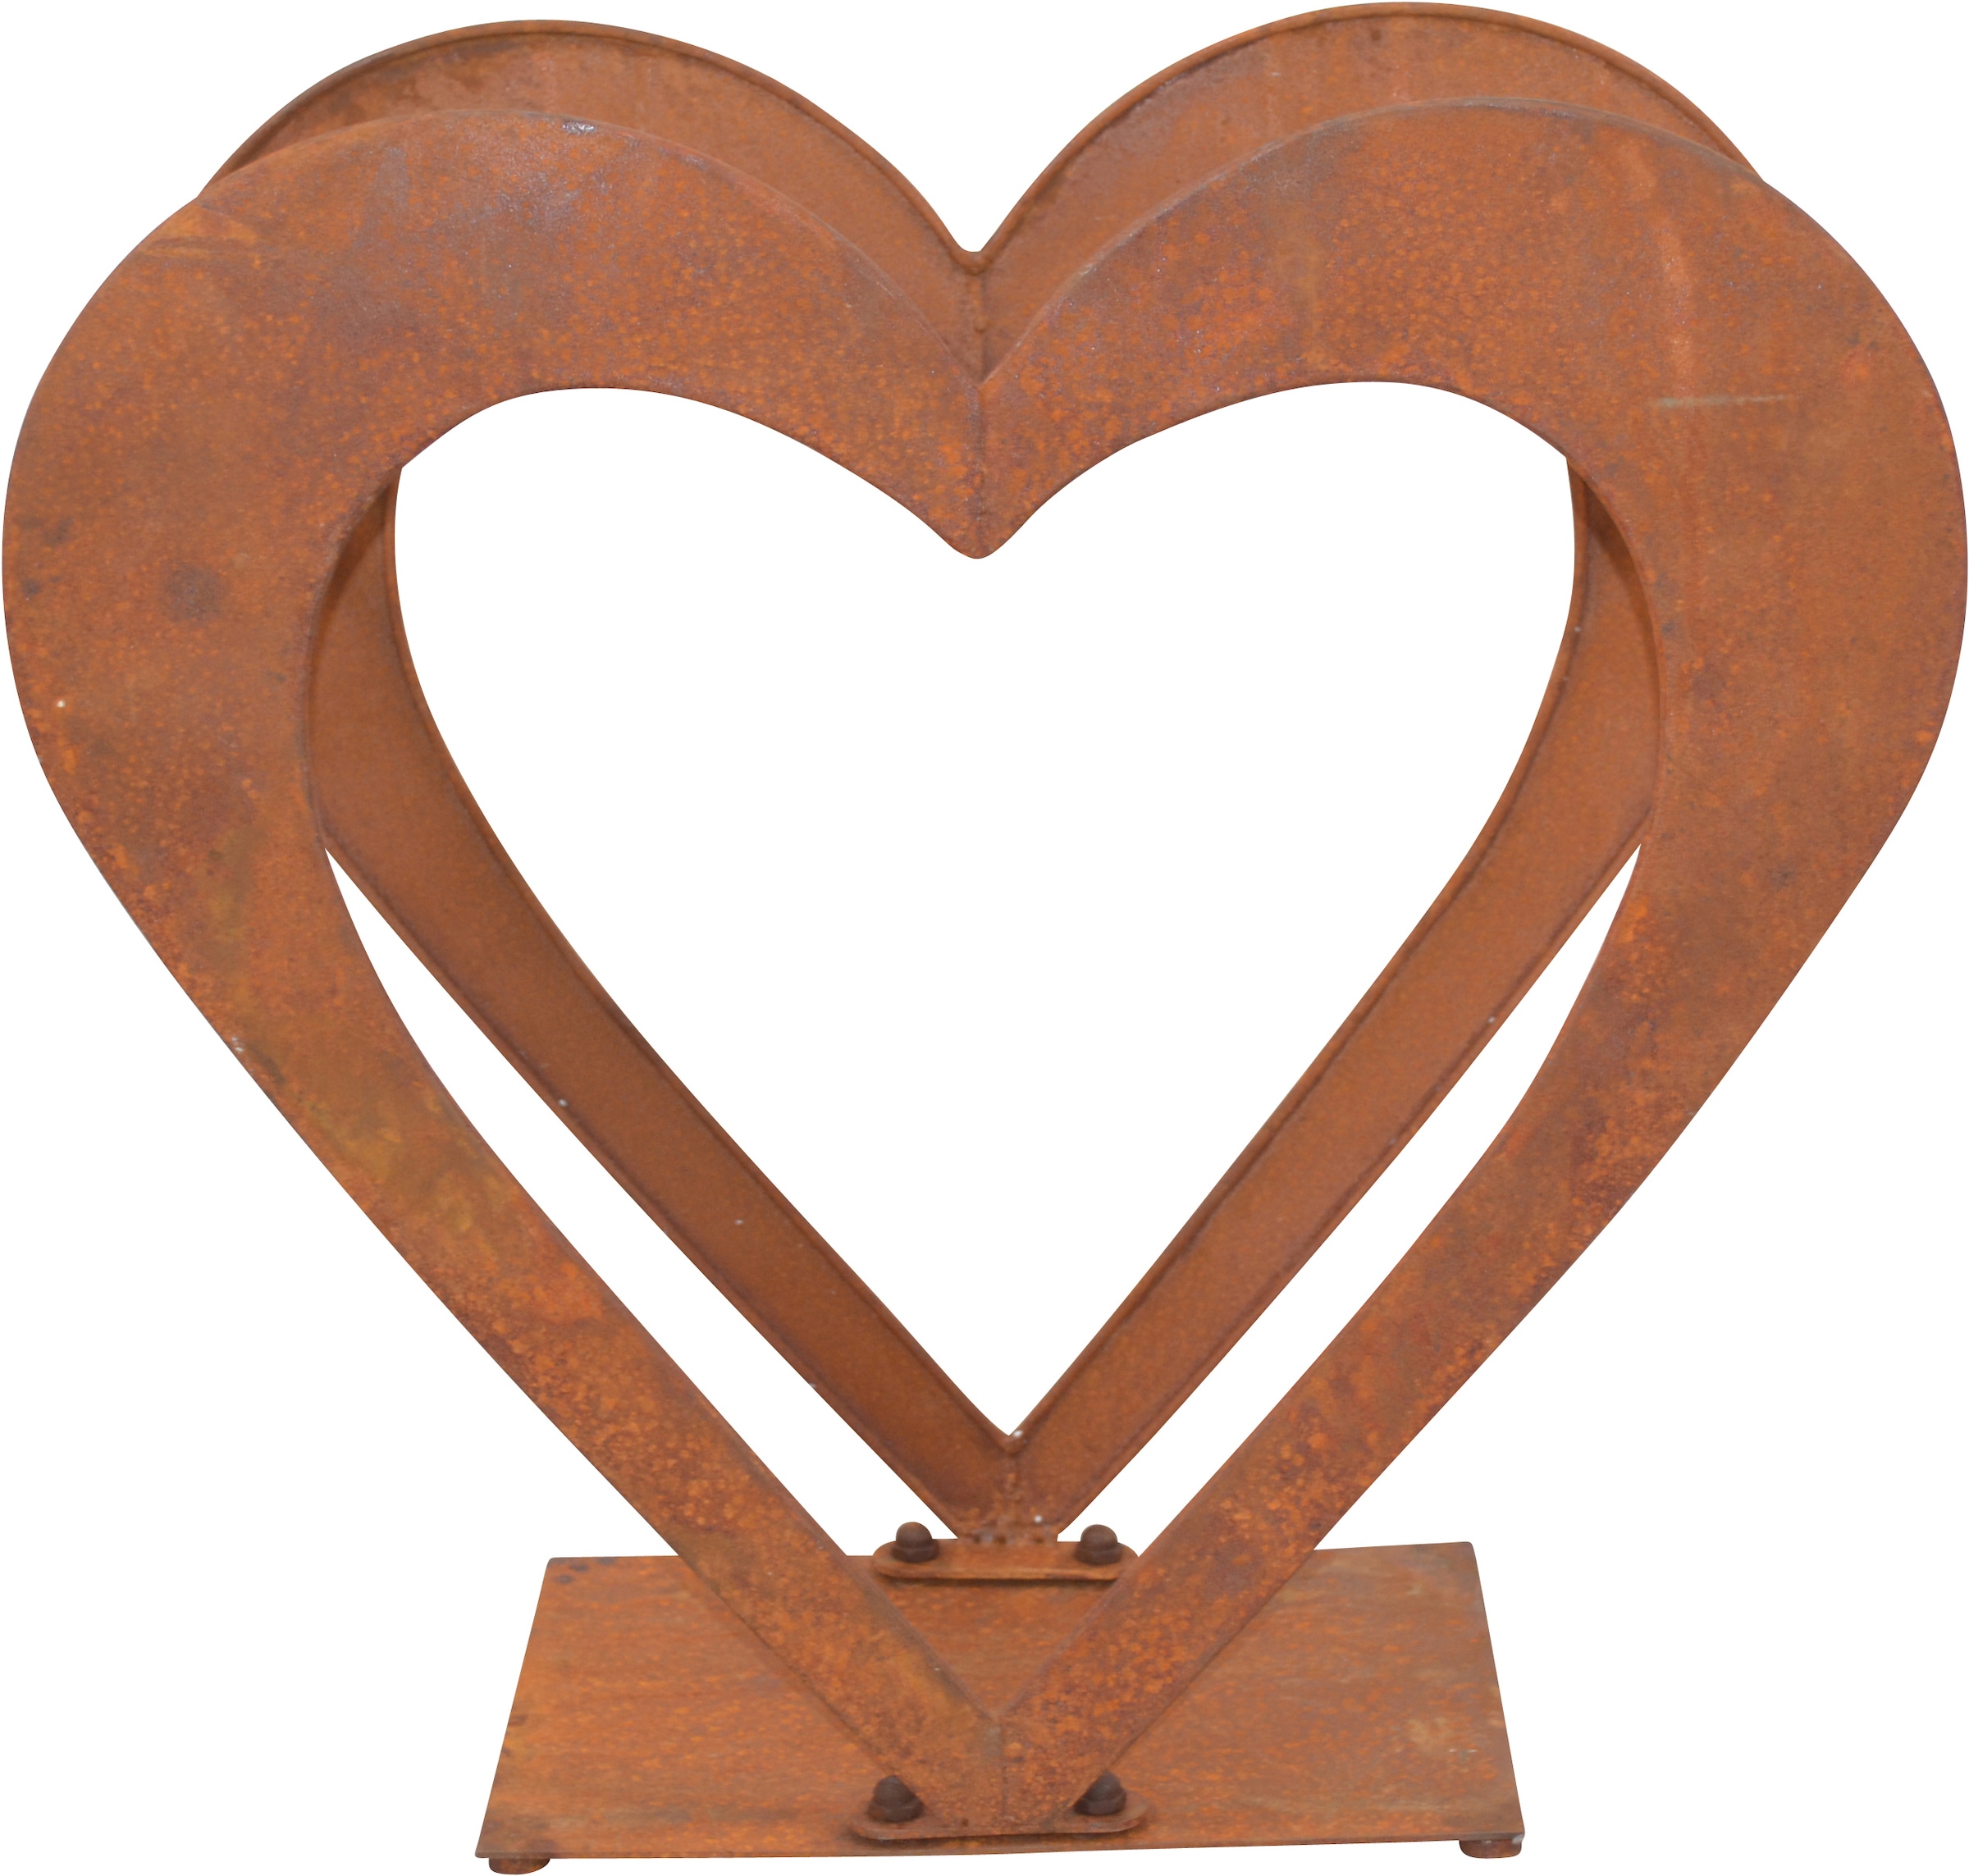 HOFMANN LIVING AND MORE Regal »Herzilein, Weihnachtsdeko aussen«, für Holz, aus Eisen mit rostiger Oberfläche